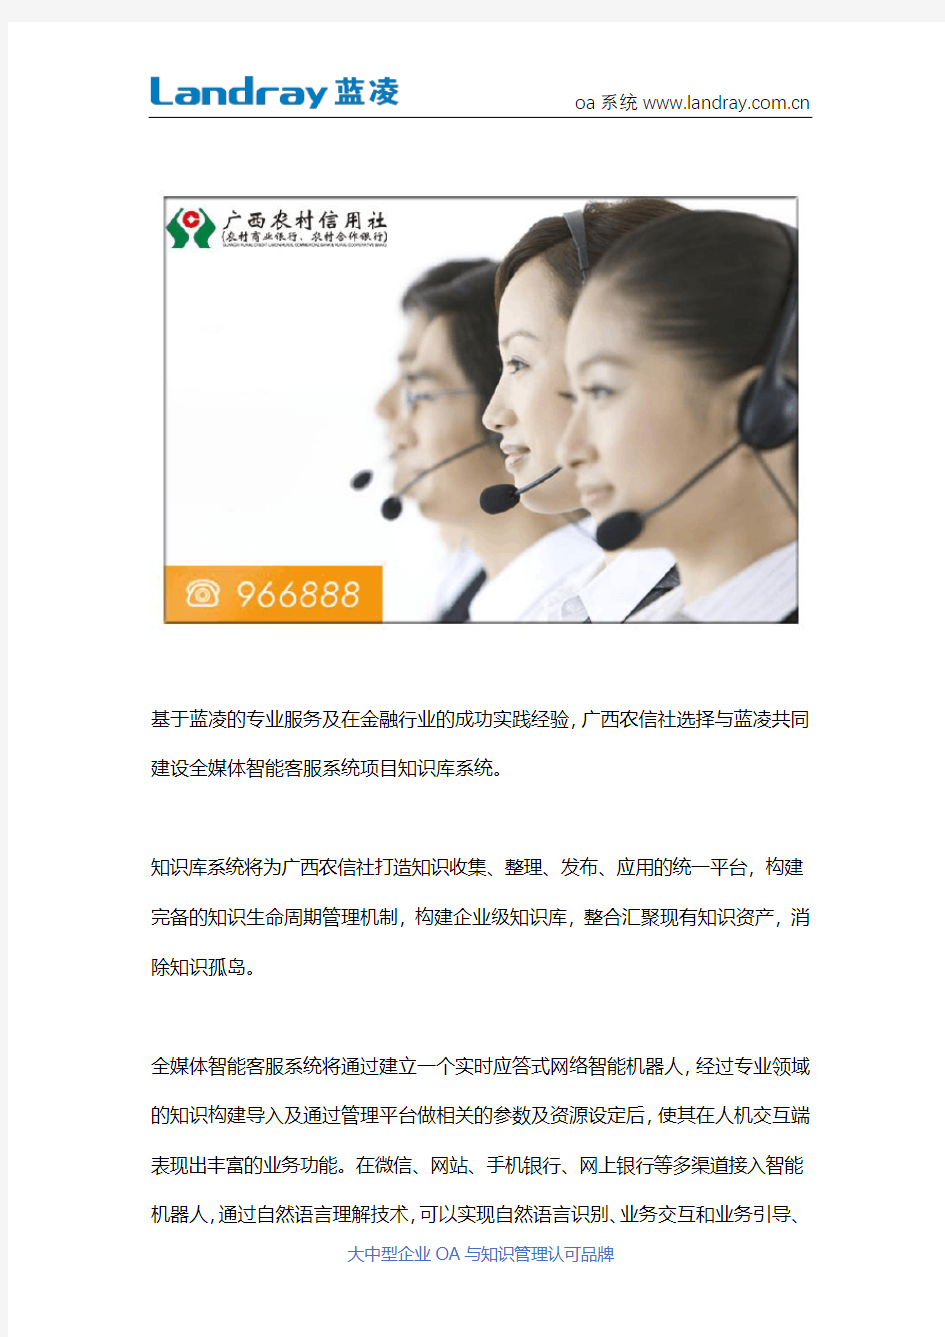 广西农信社选择蓝凌知识管理平台,共建全媒体智能客服系统